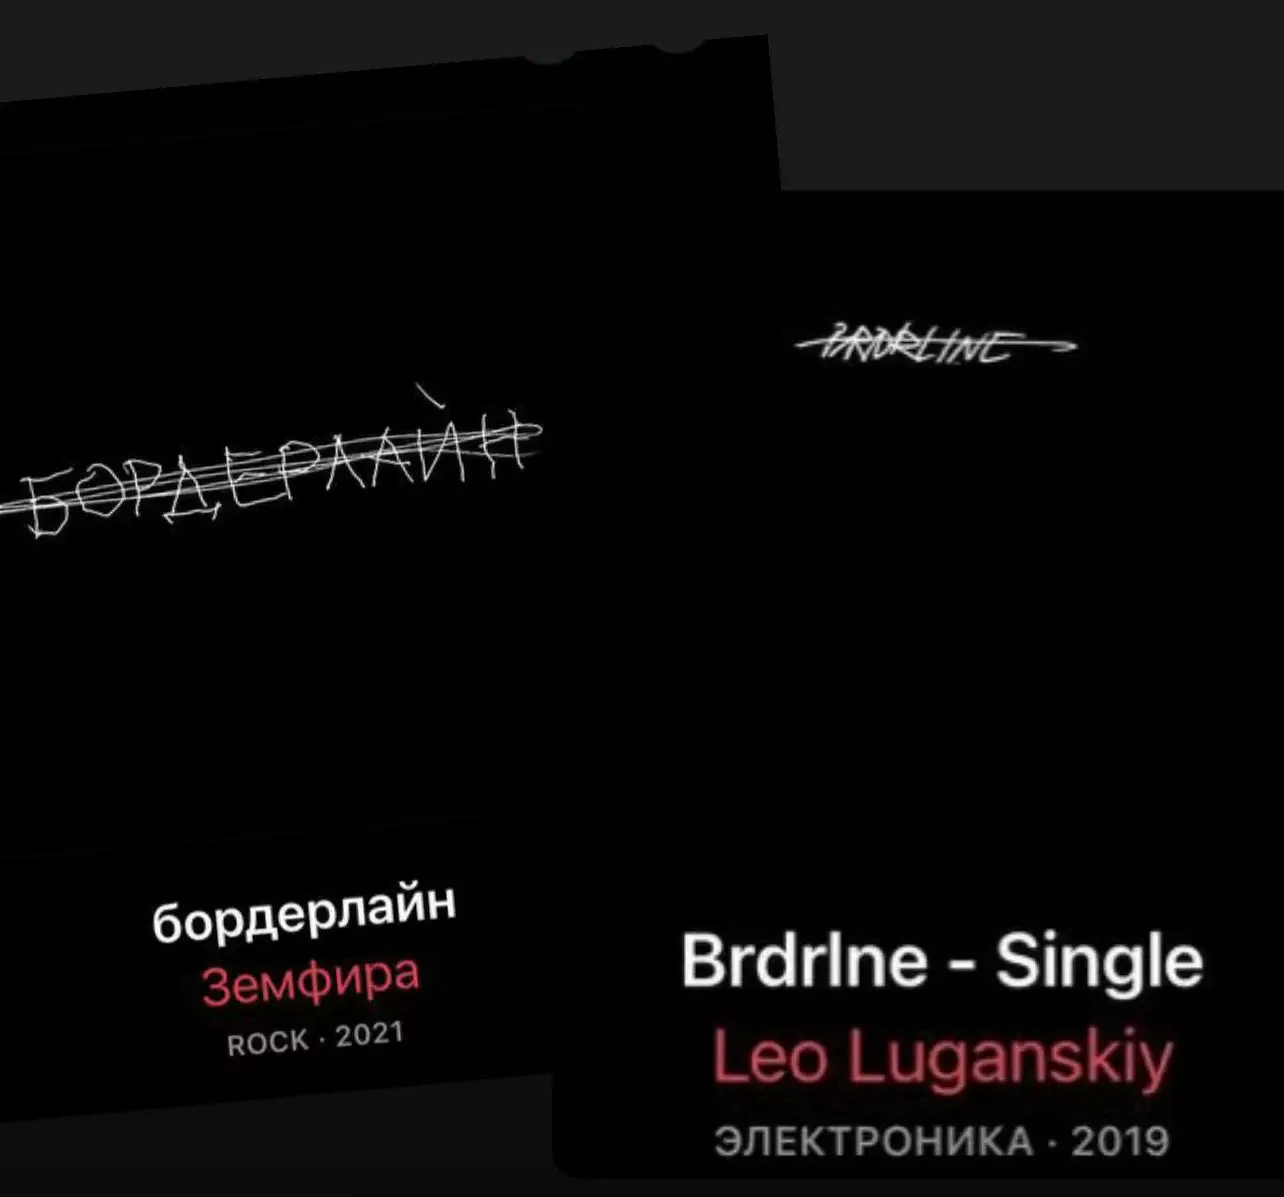 Обложка песни музыканта Лео Луганского и обложка альбома Земфиры